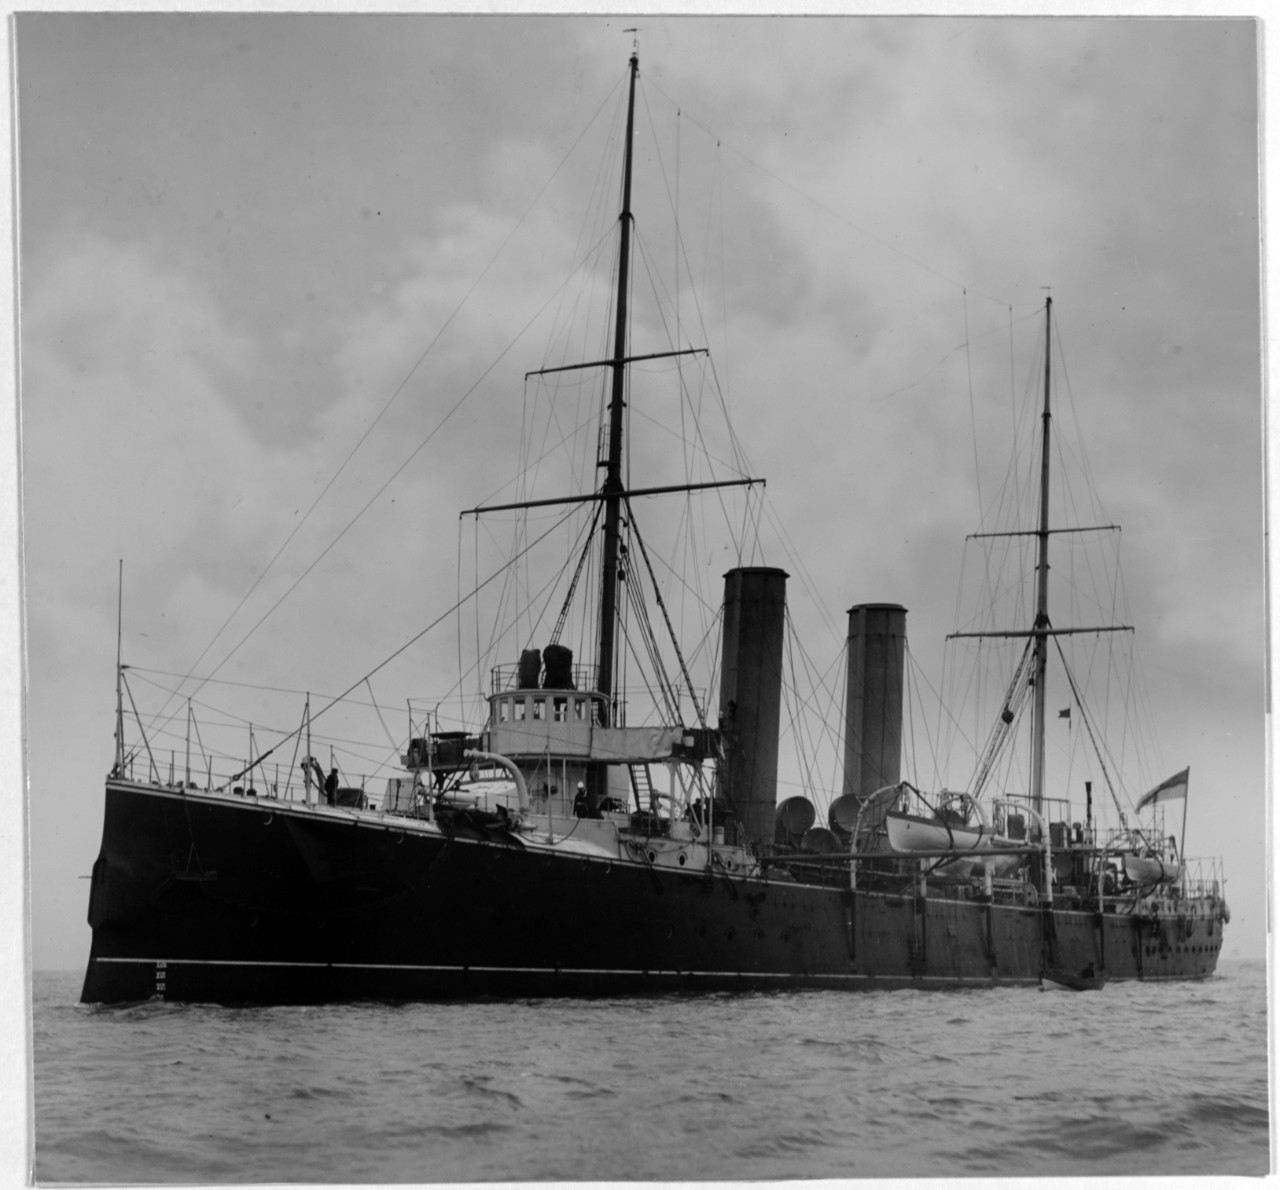 SCYLLA (British Cruiser, 1891-1914)